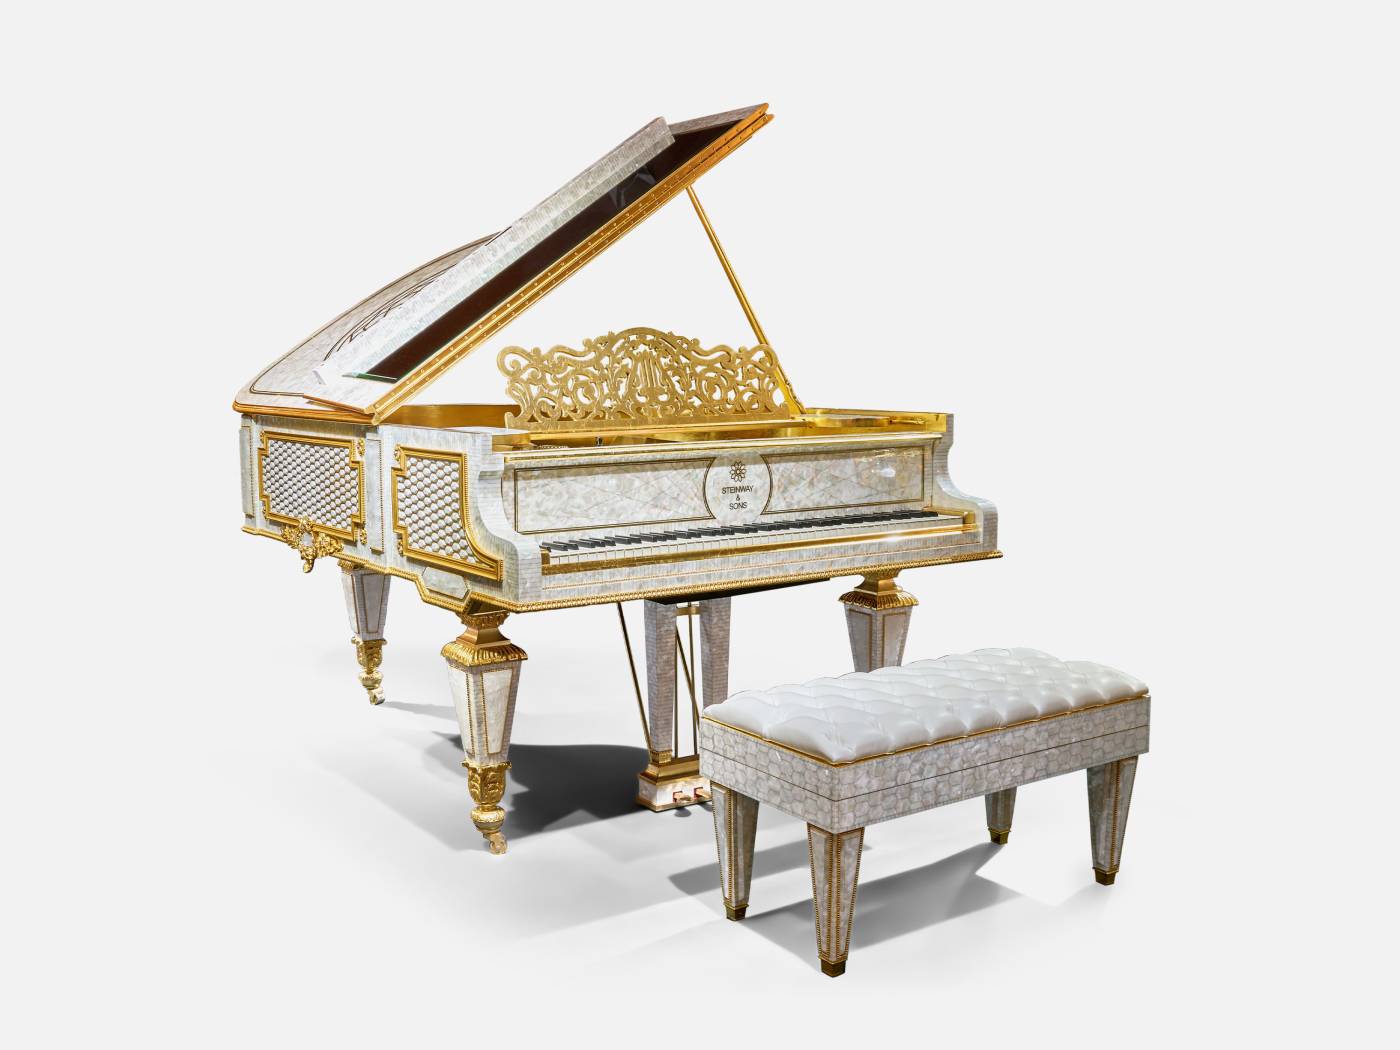 ART. 2728 – C.G. Capelletti Italian Luxury Classic Pianos. Made in Italy classic interior design